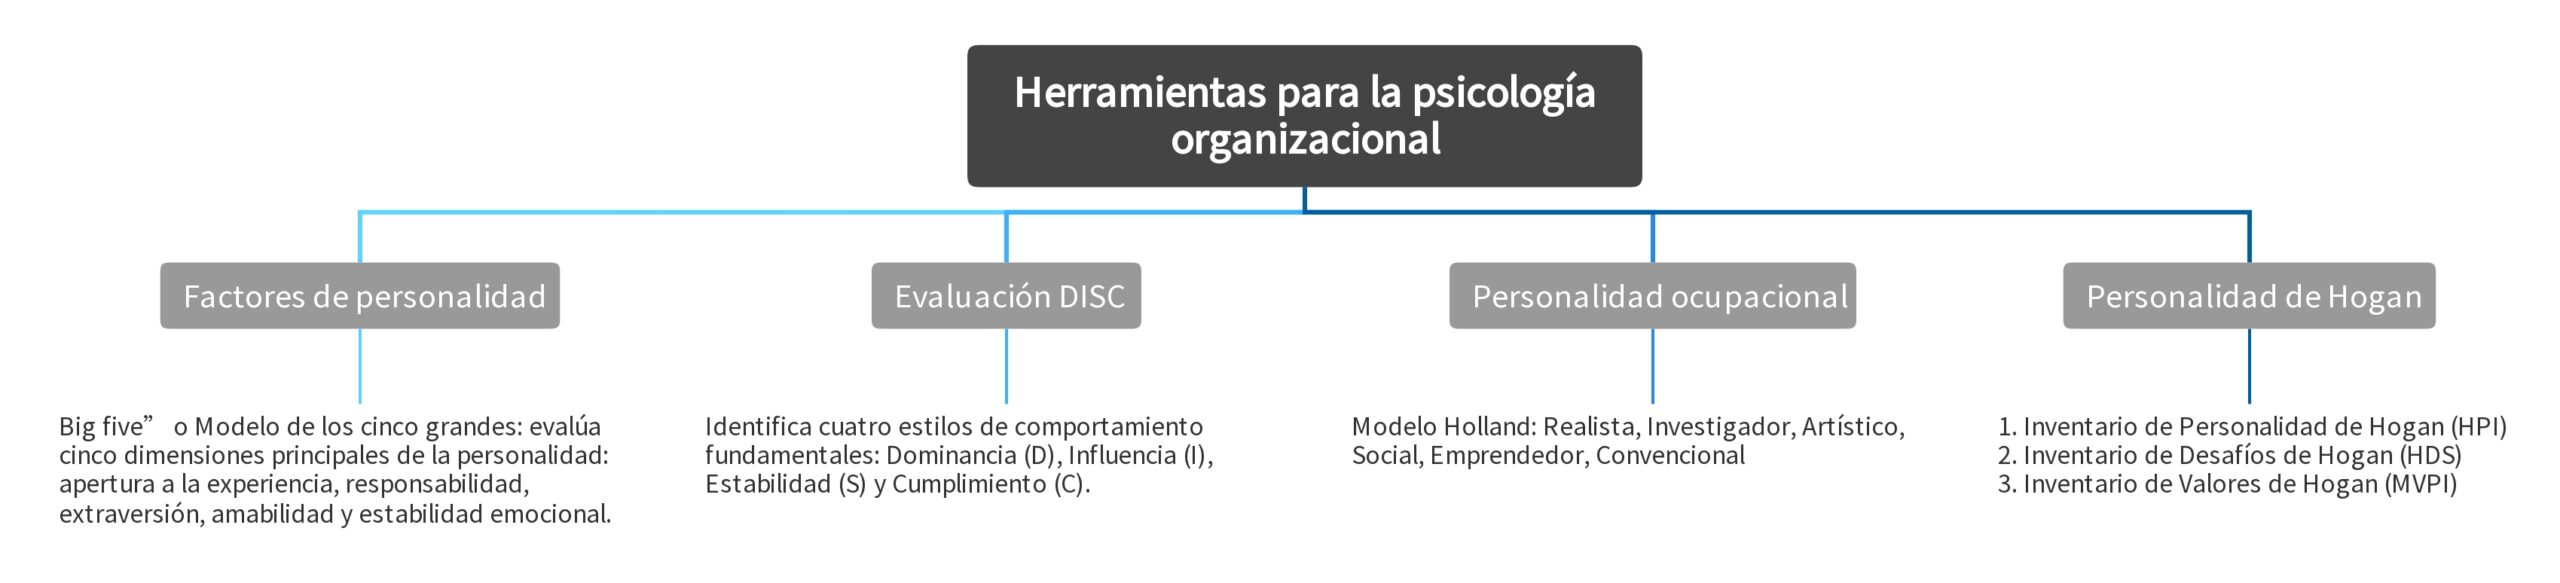 Herramientas para la psicología organizacional